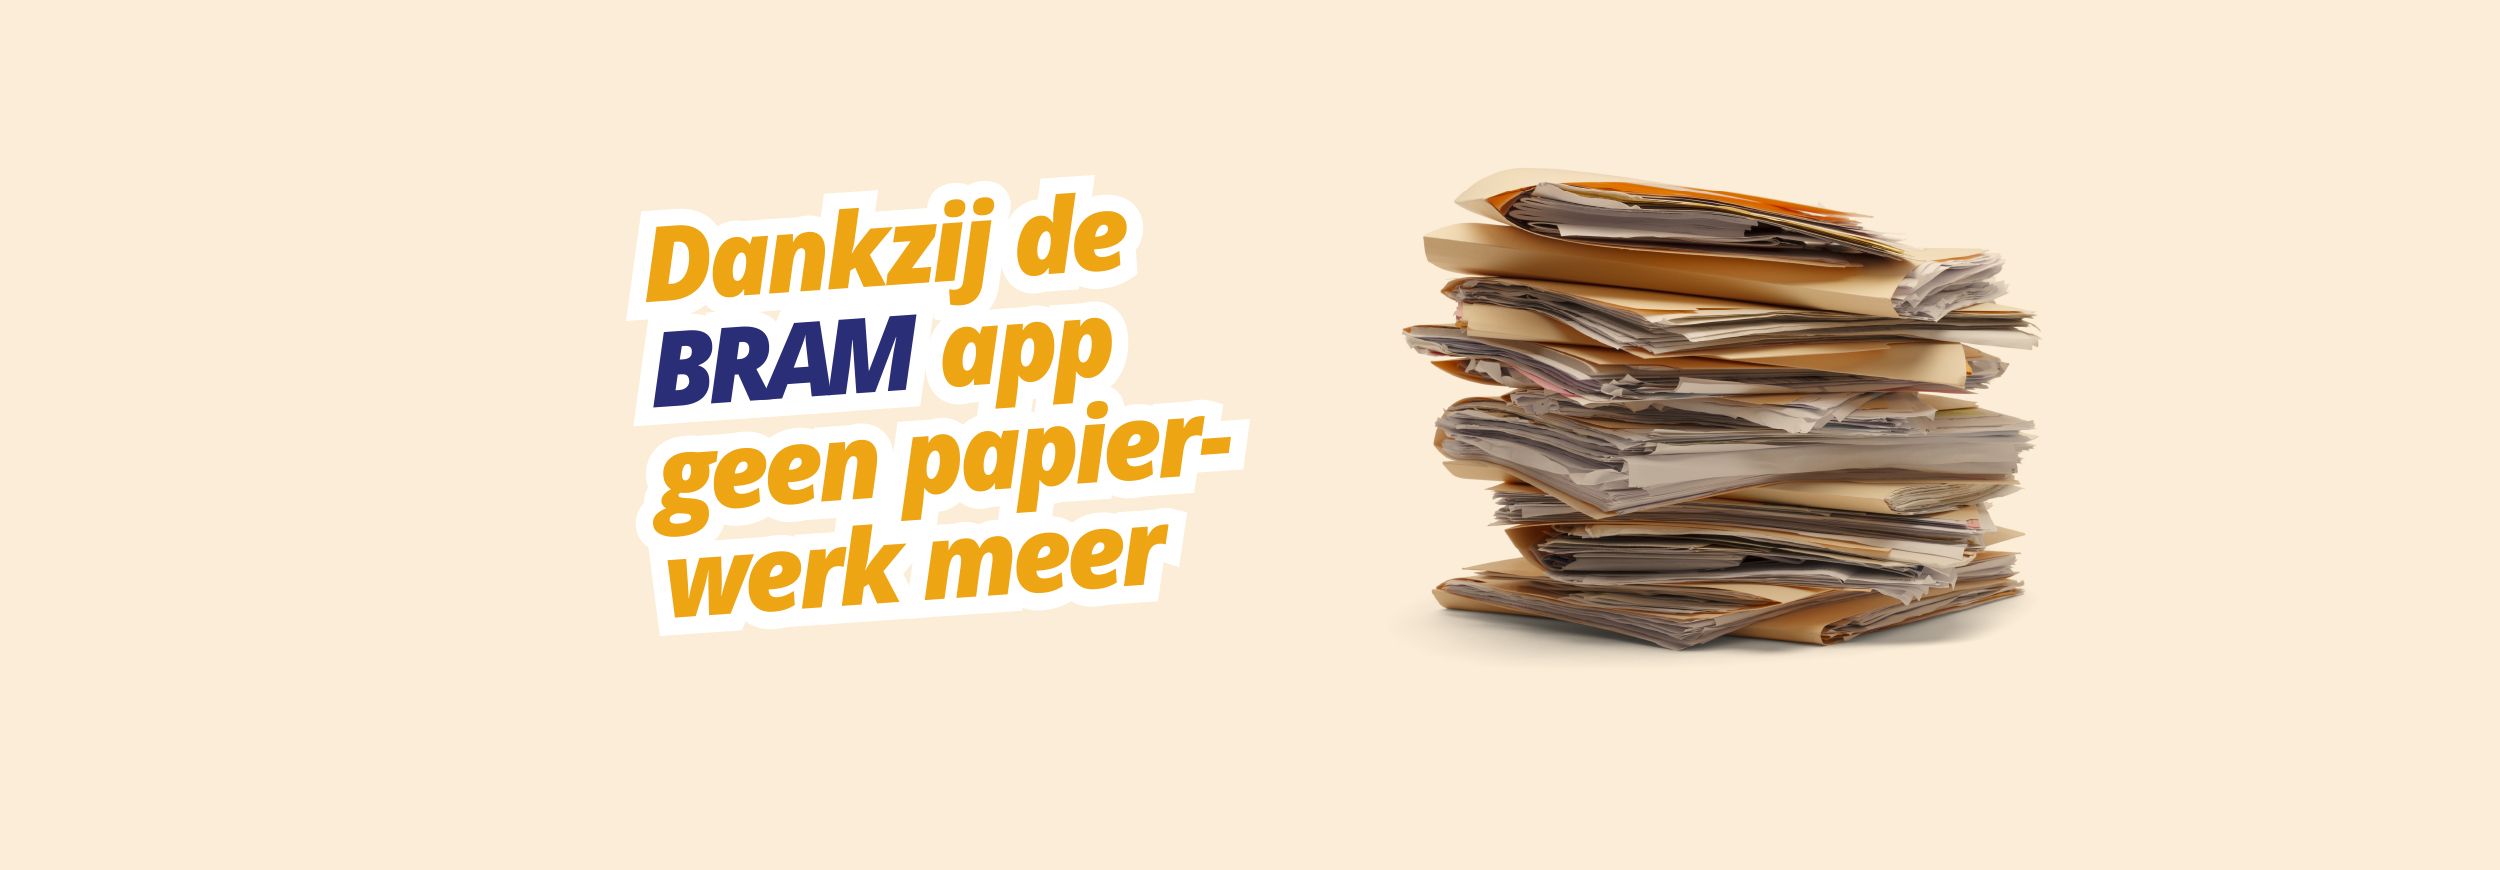 Abonnementen BRAM app | Dankzij de BRAM app geen papierwerk meer